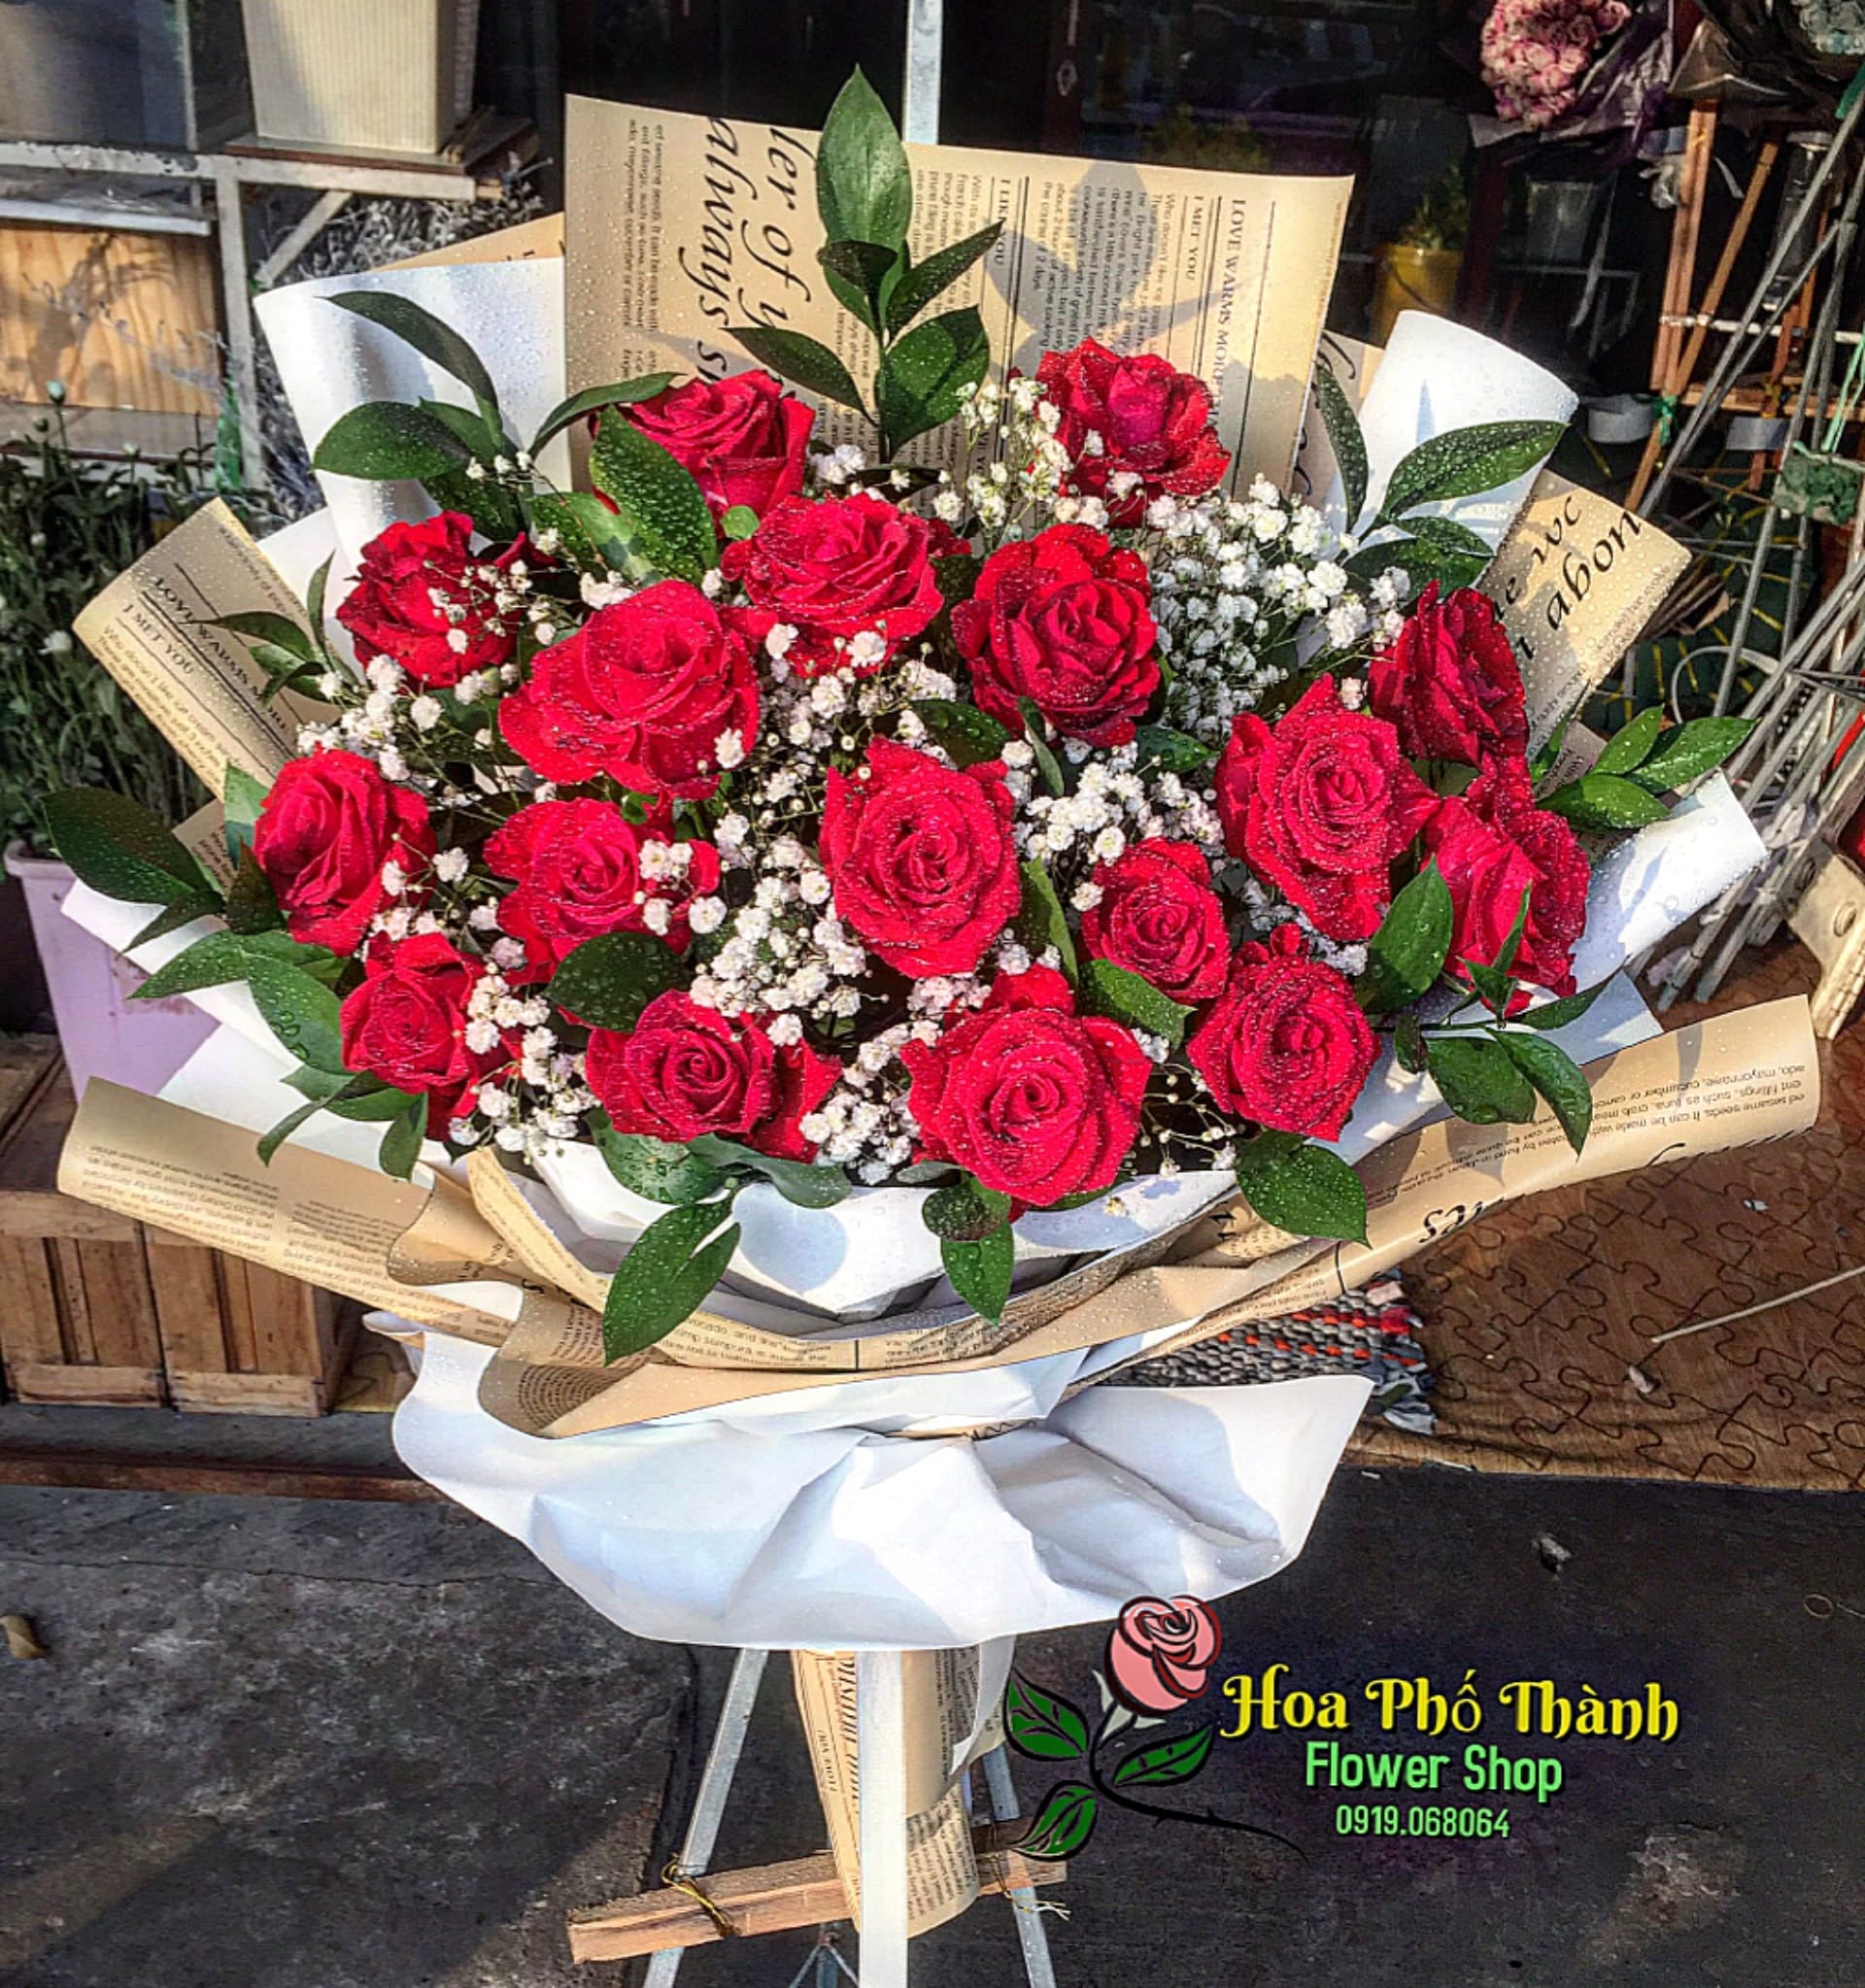 Bó hoa đẹp hồng đỏ tặng người yêu ngày sinh nhật tại hoa tươi phố thành rạch giá kiên giang